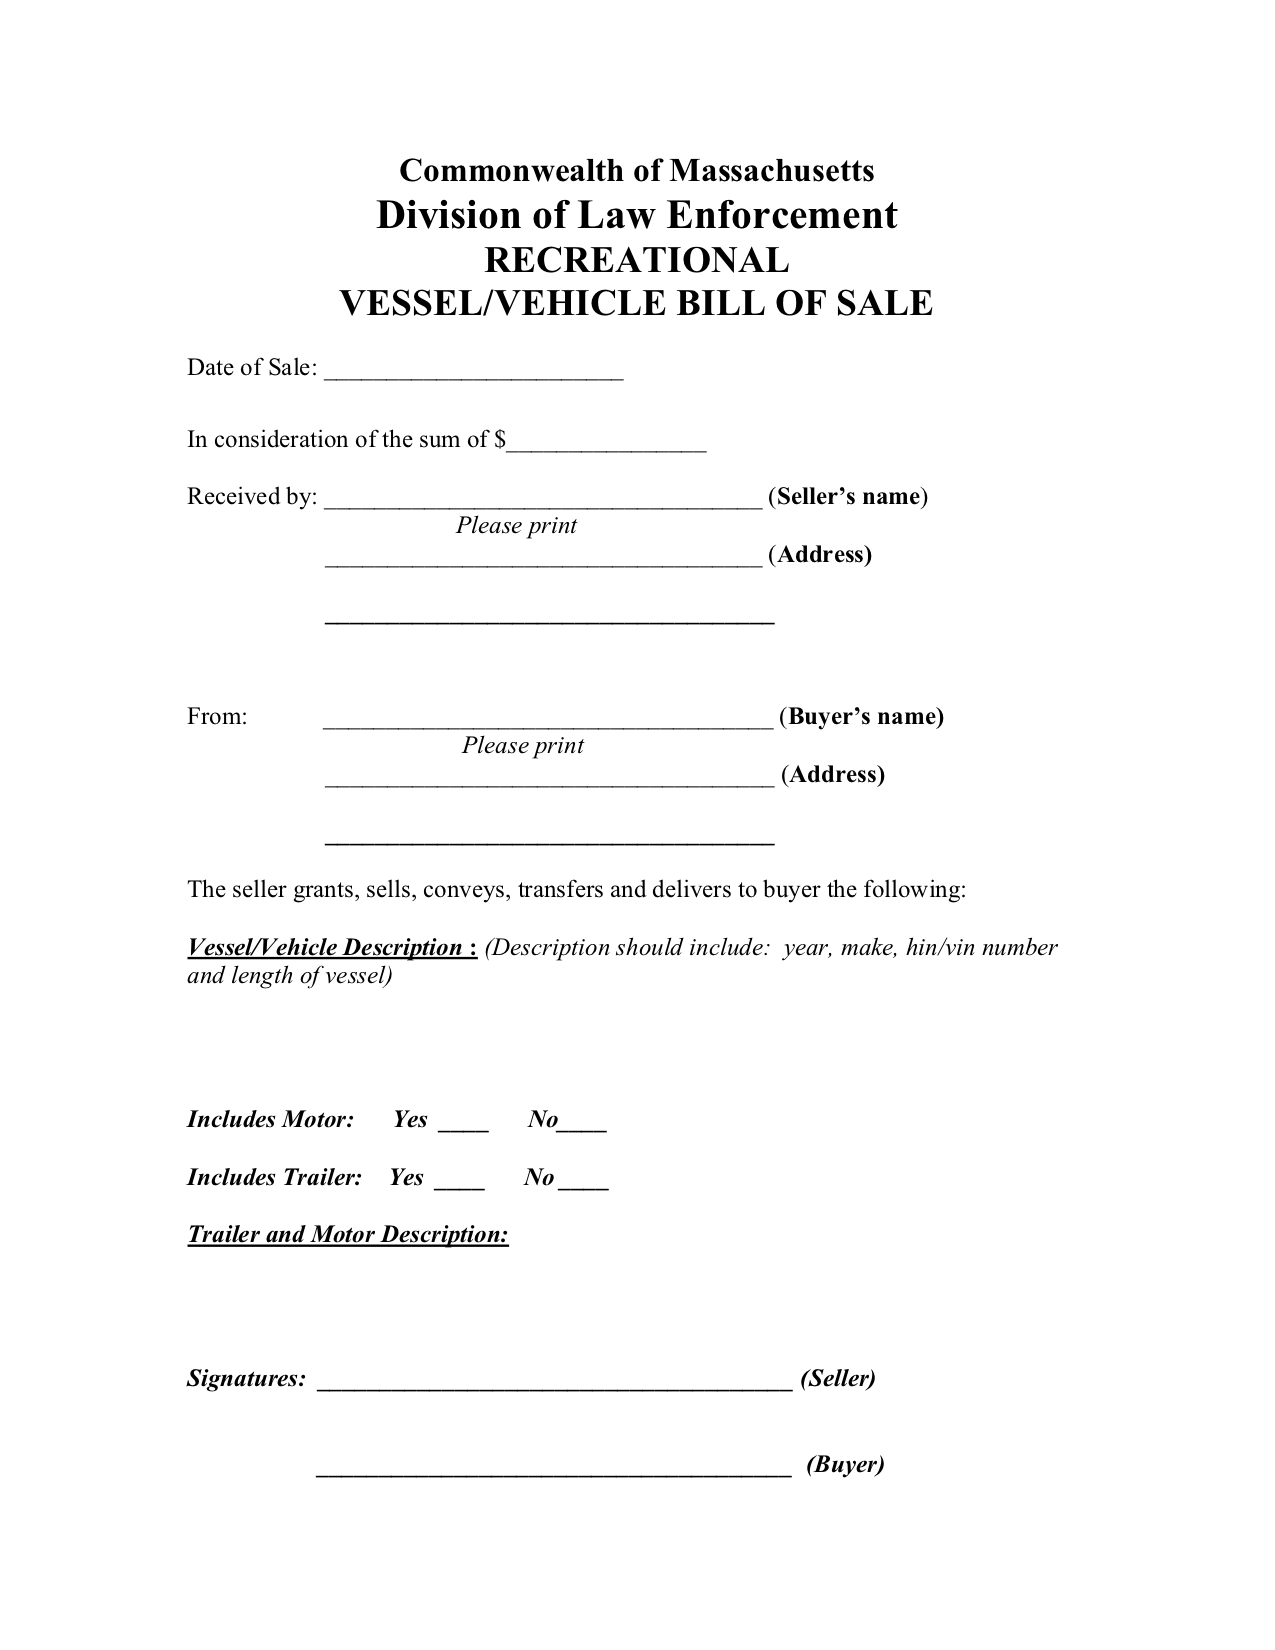 Free Massachusetts Bill of Sale Form - PDF Template  LegalTemplates For Bill Of Sale Template Ri